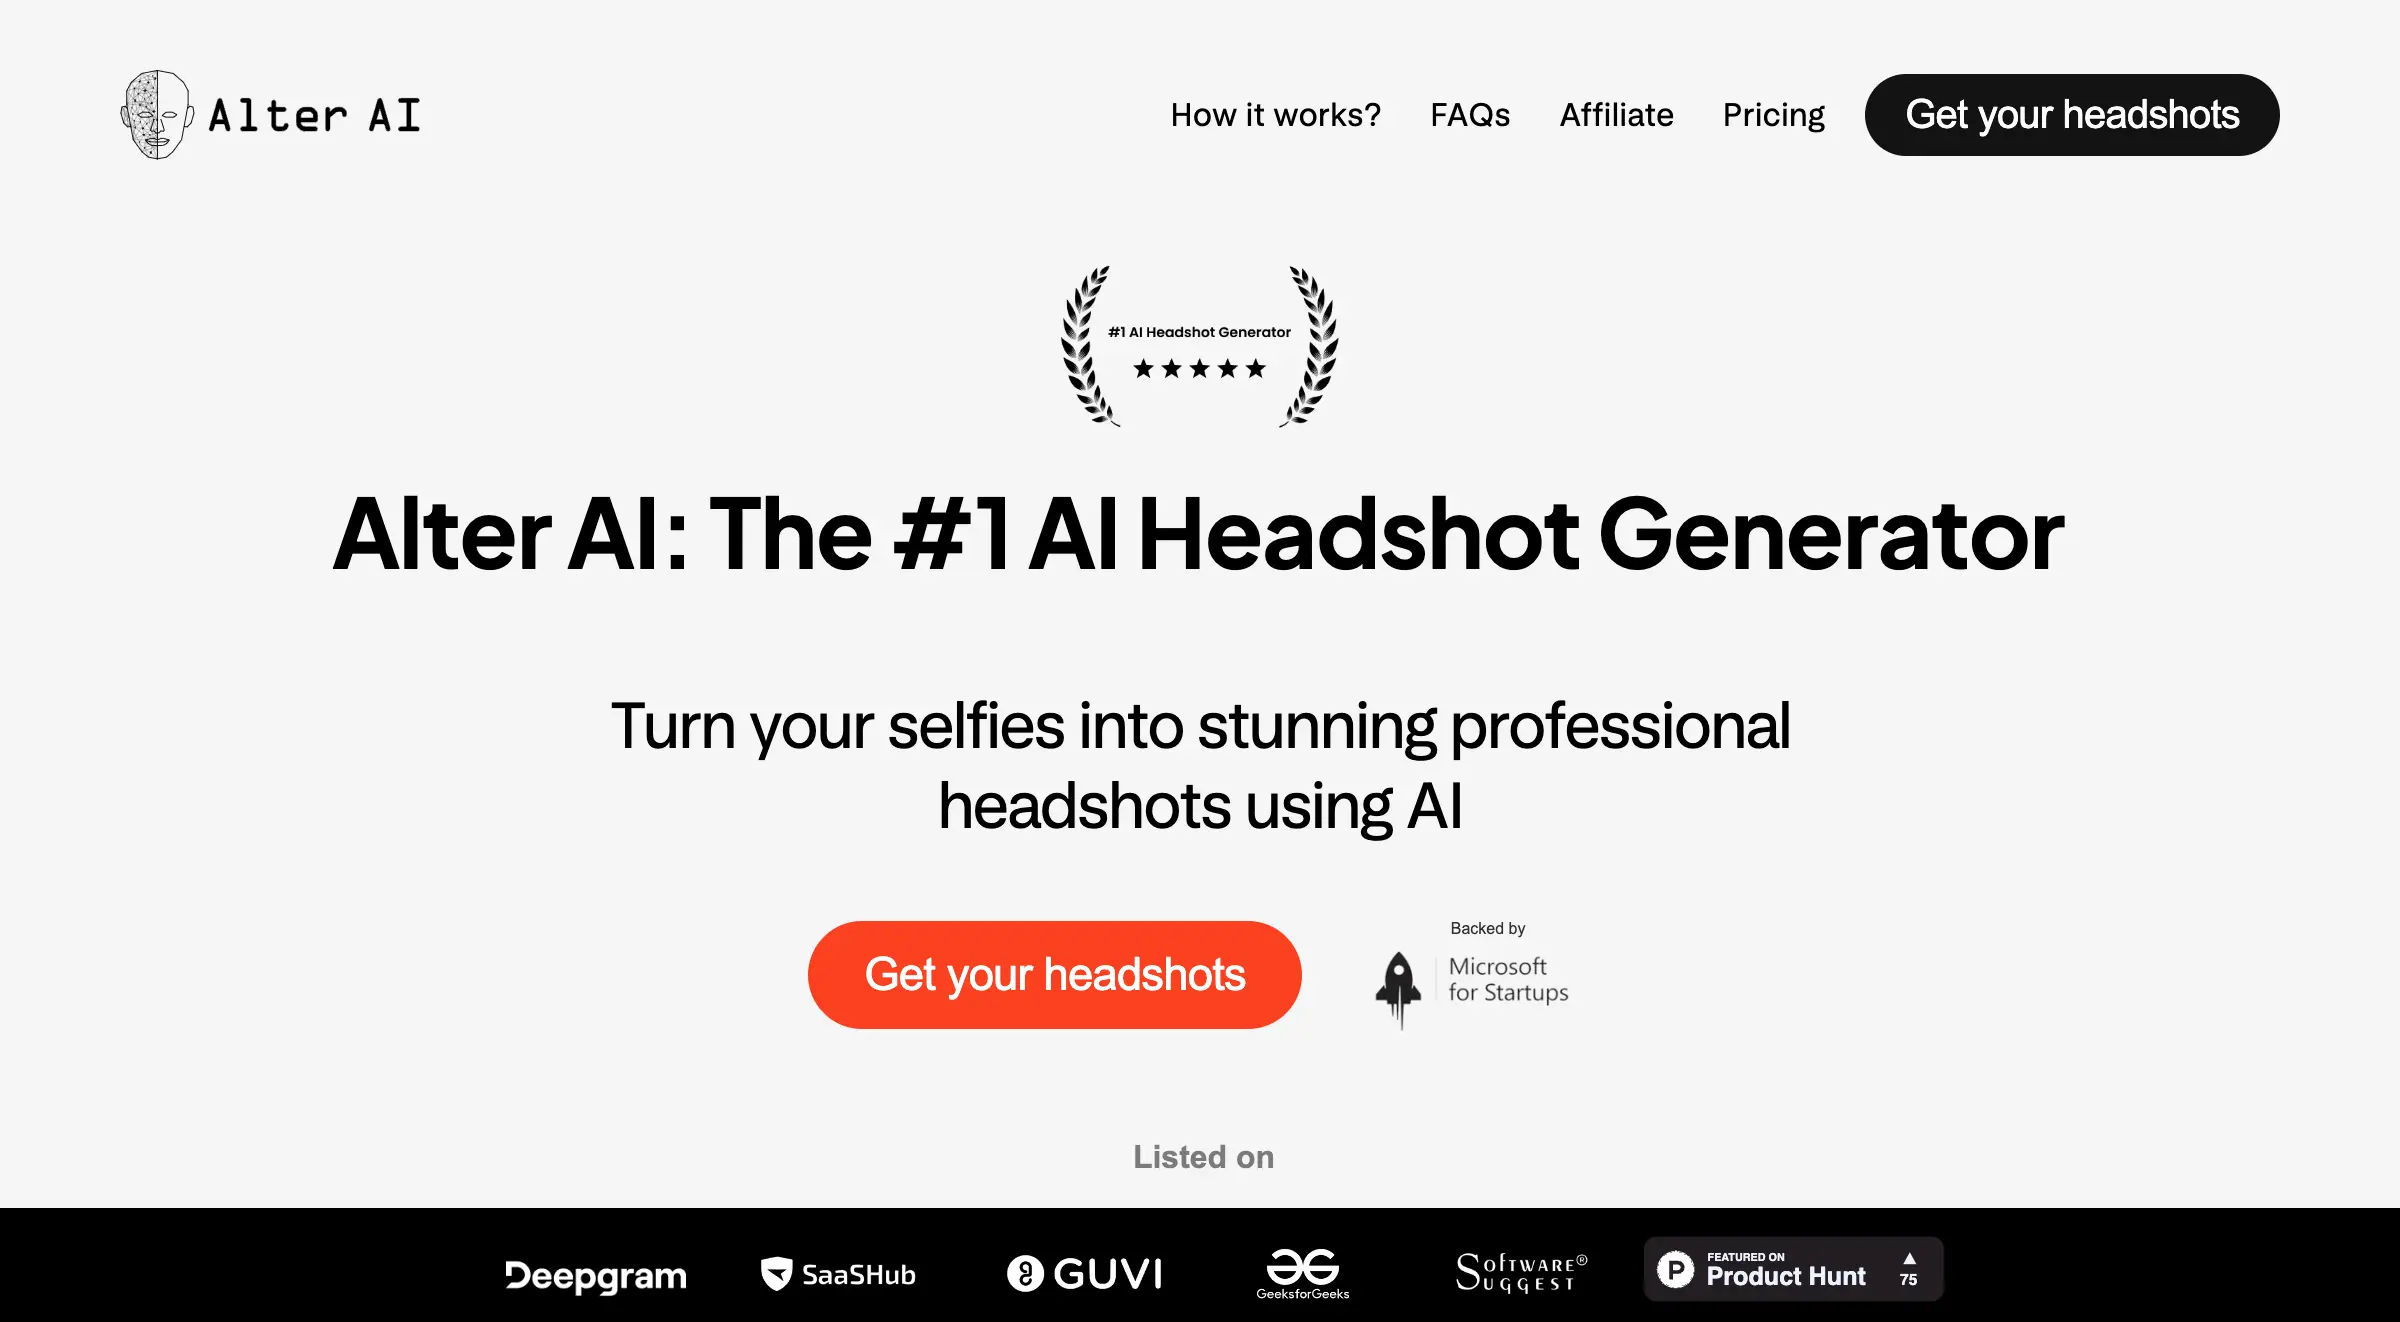 Alter AI: The #1 AI Headshot Generator